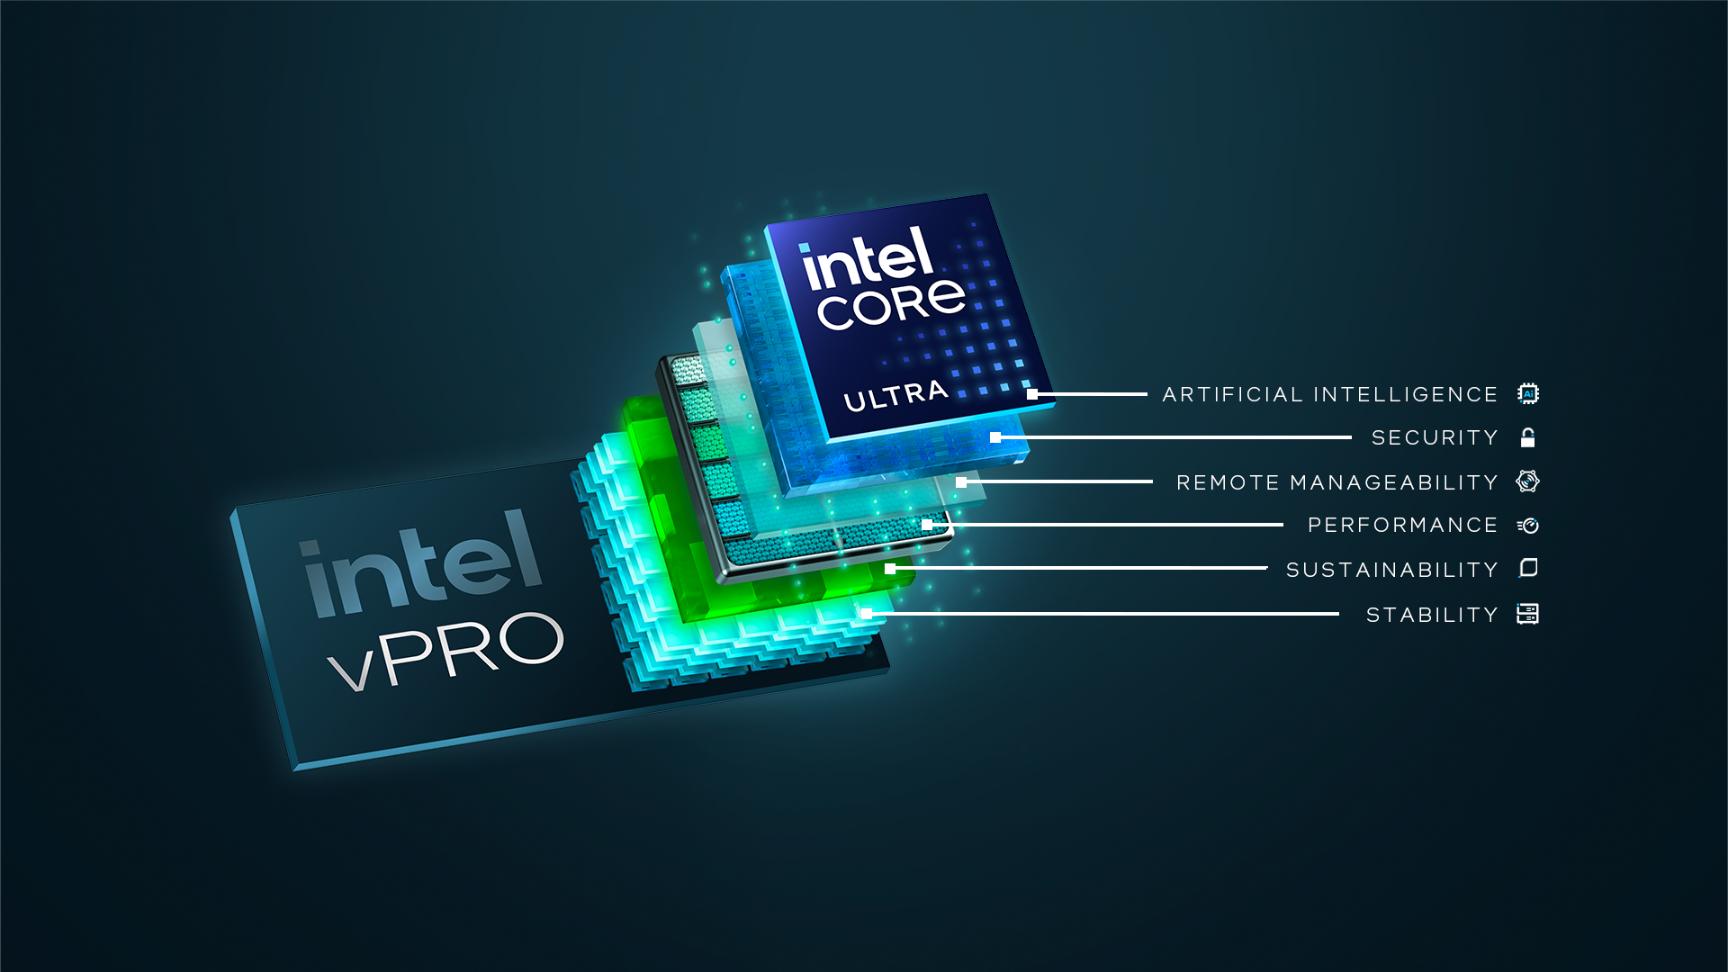 Intel Vpro Tile Image 1